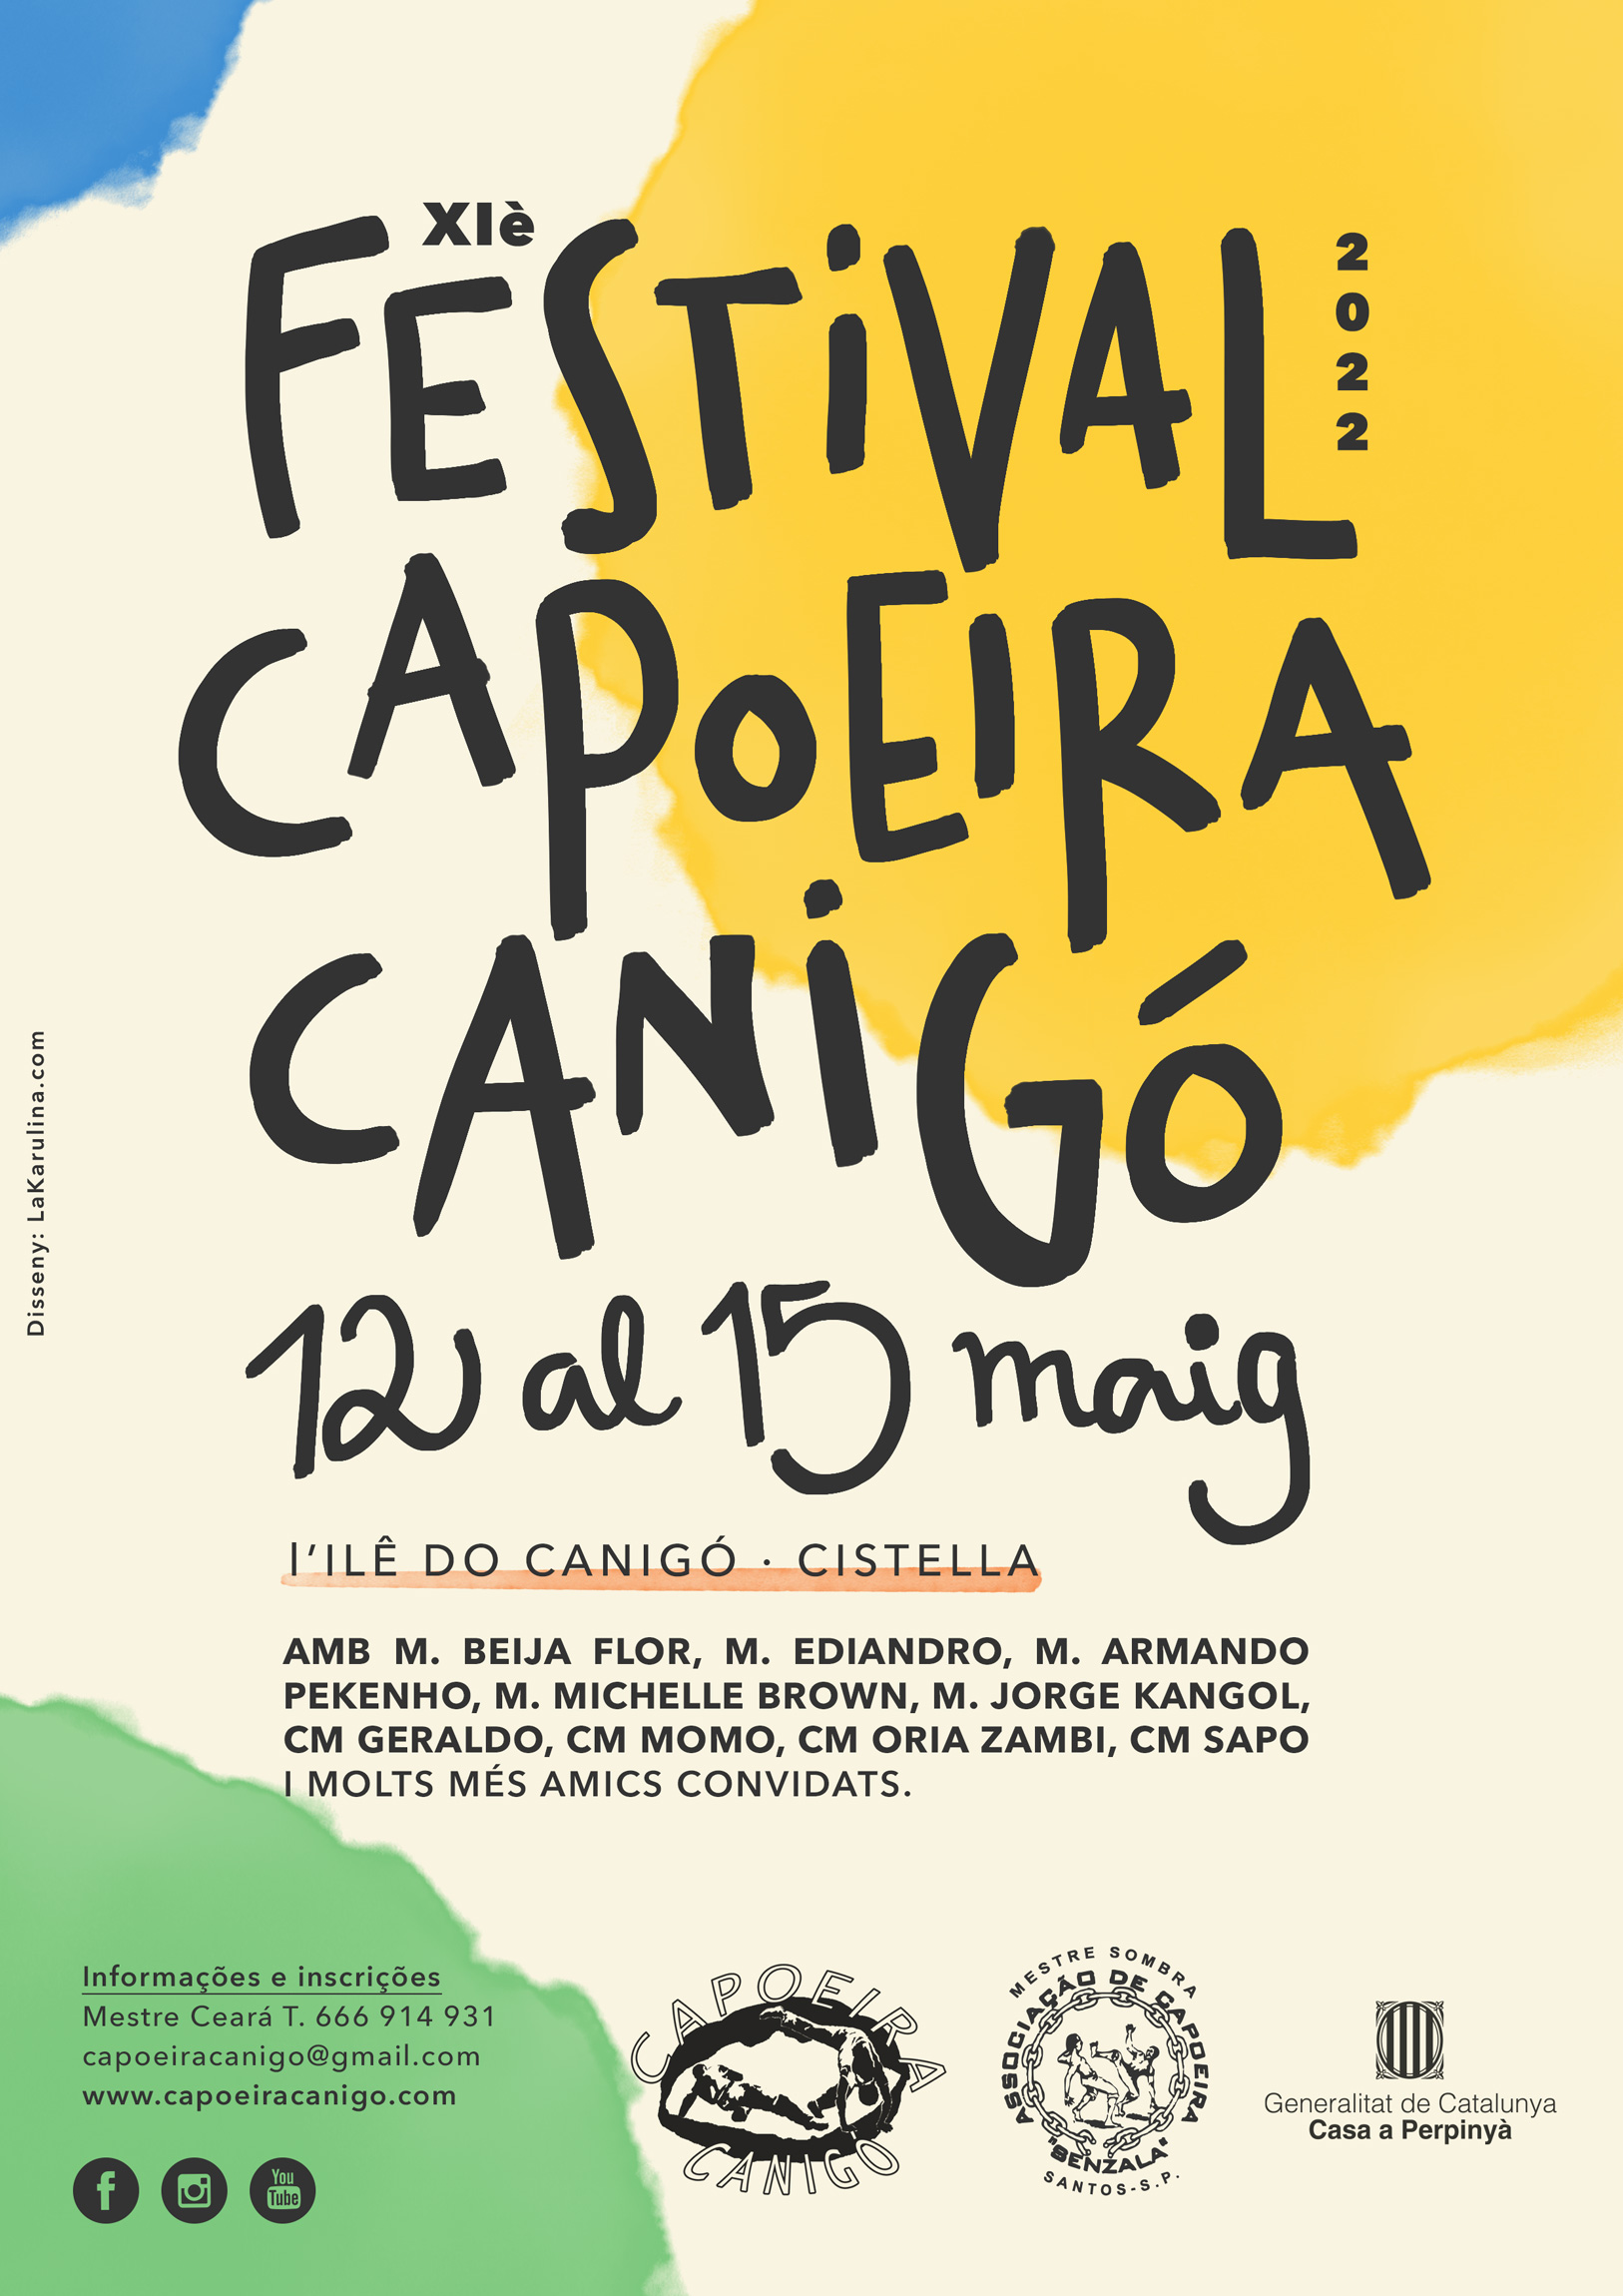 Festival Capoeira Canigó 2022 Mestre Ceará Girona